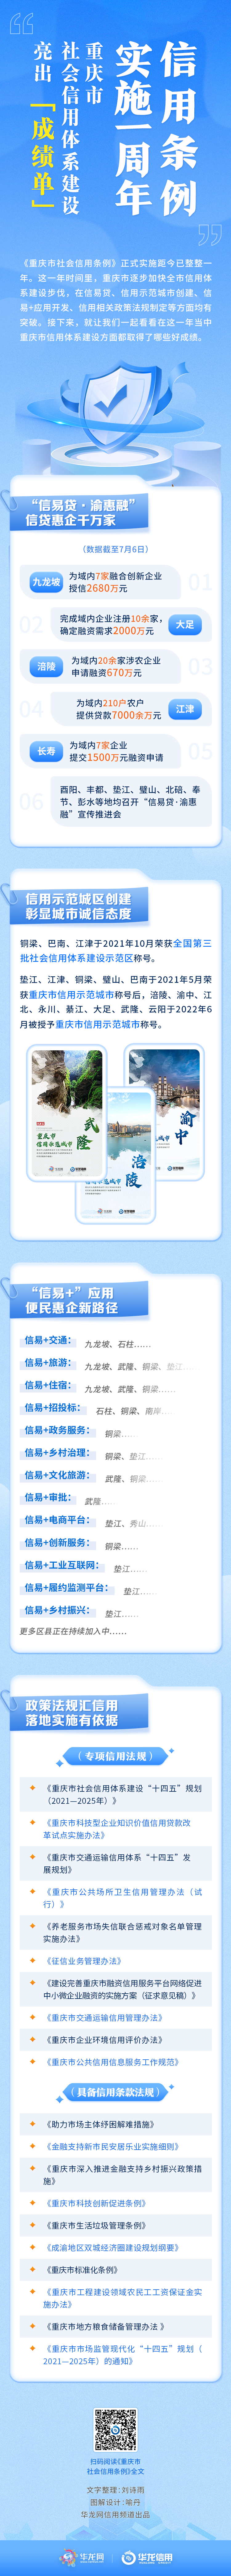 重庆市社会信用条例实施一周年